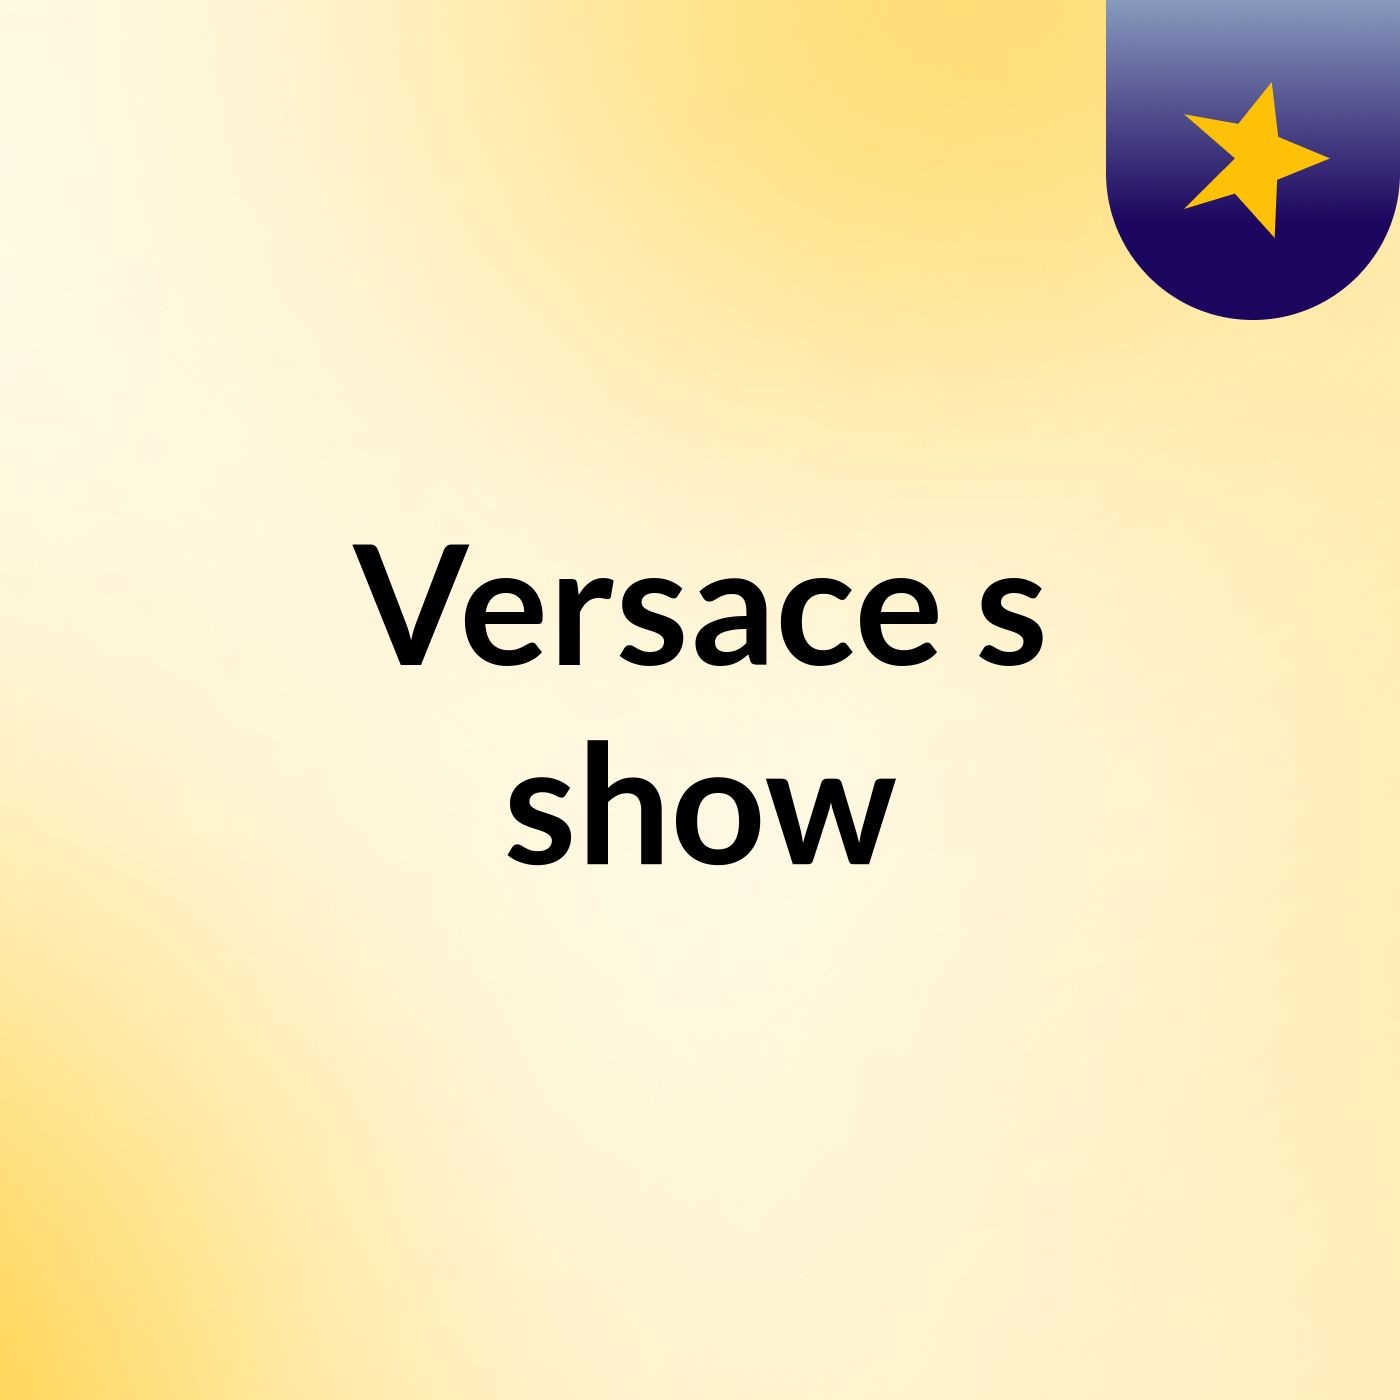 Versace's show